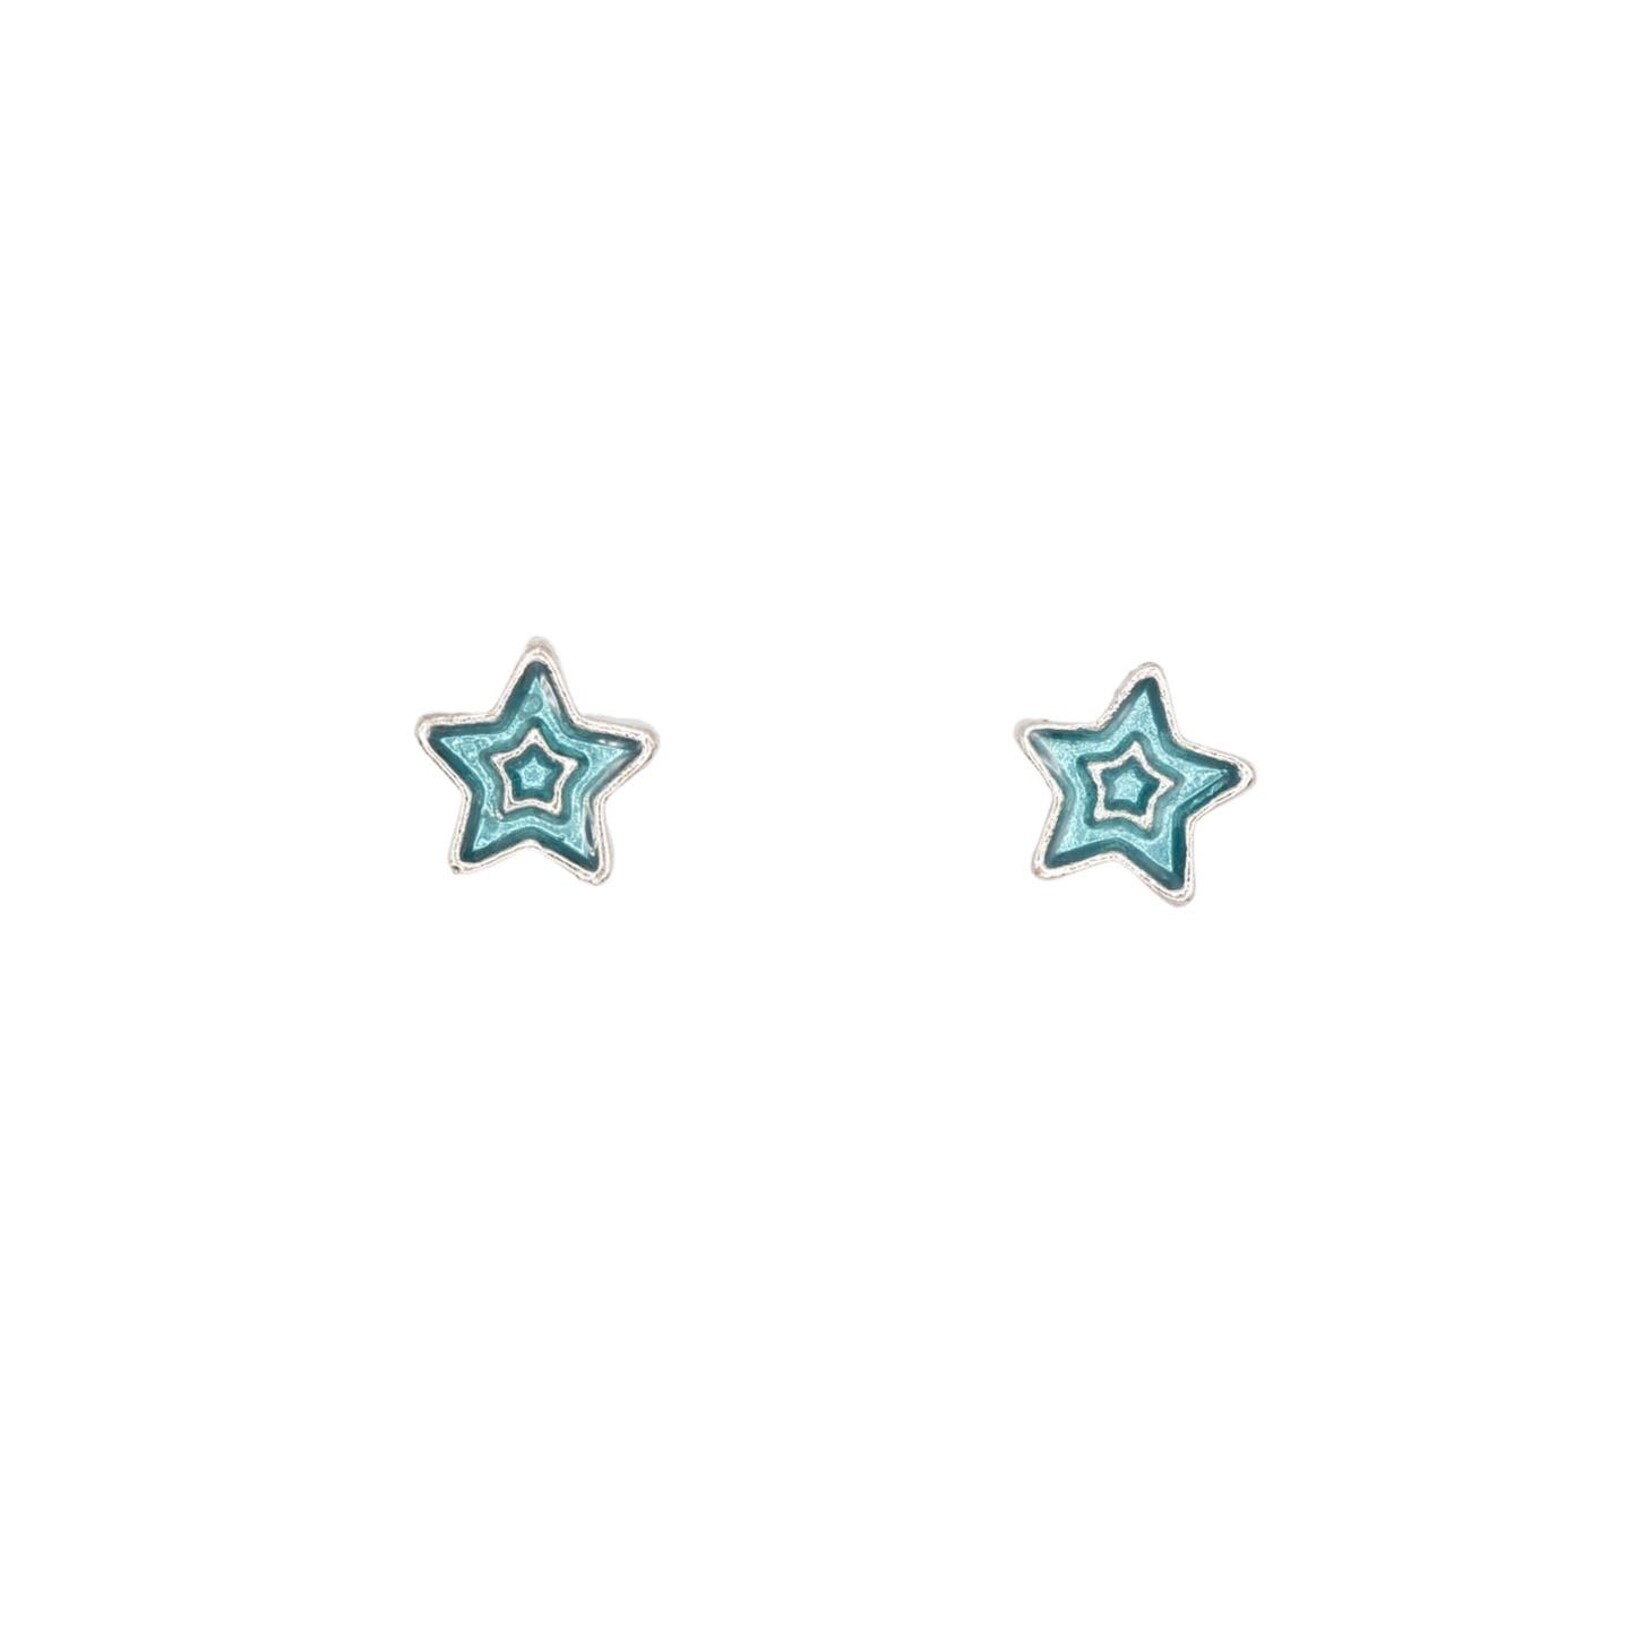 Rebecca Accessories Rebecca Accessories - Earrings - Blue Star Post